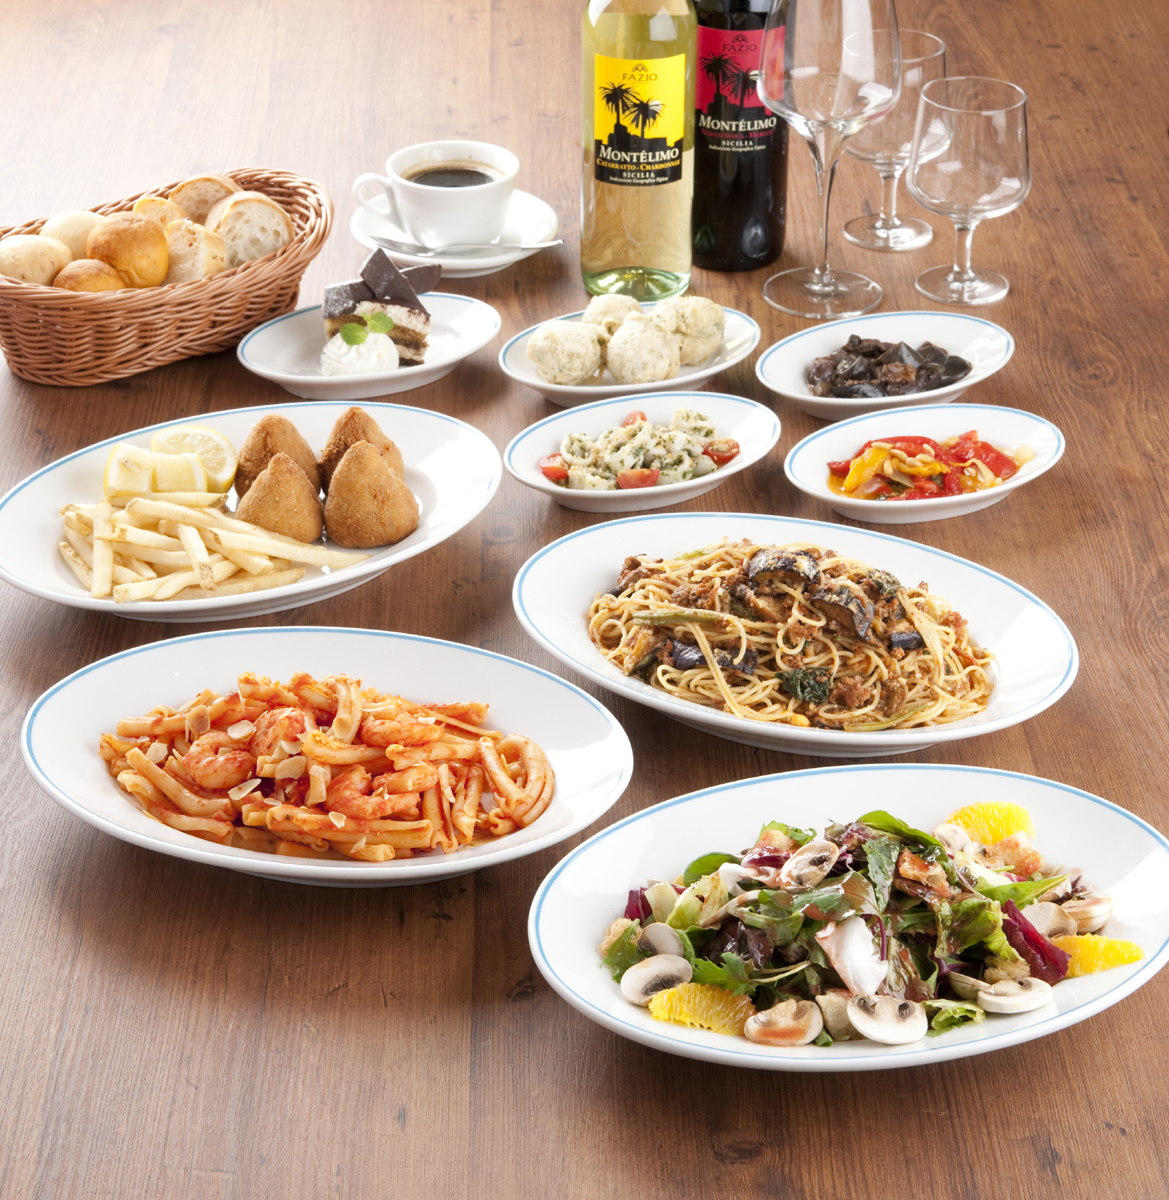 イタリア シチリア料理店 タオルミーナ に 冬のパーティープラン が登場シチリア名物の小皿料理 大皿パスタ サラダ パンなどに飲み放題付きで 4 500 株式会社wdi のプレスリリース